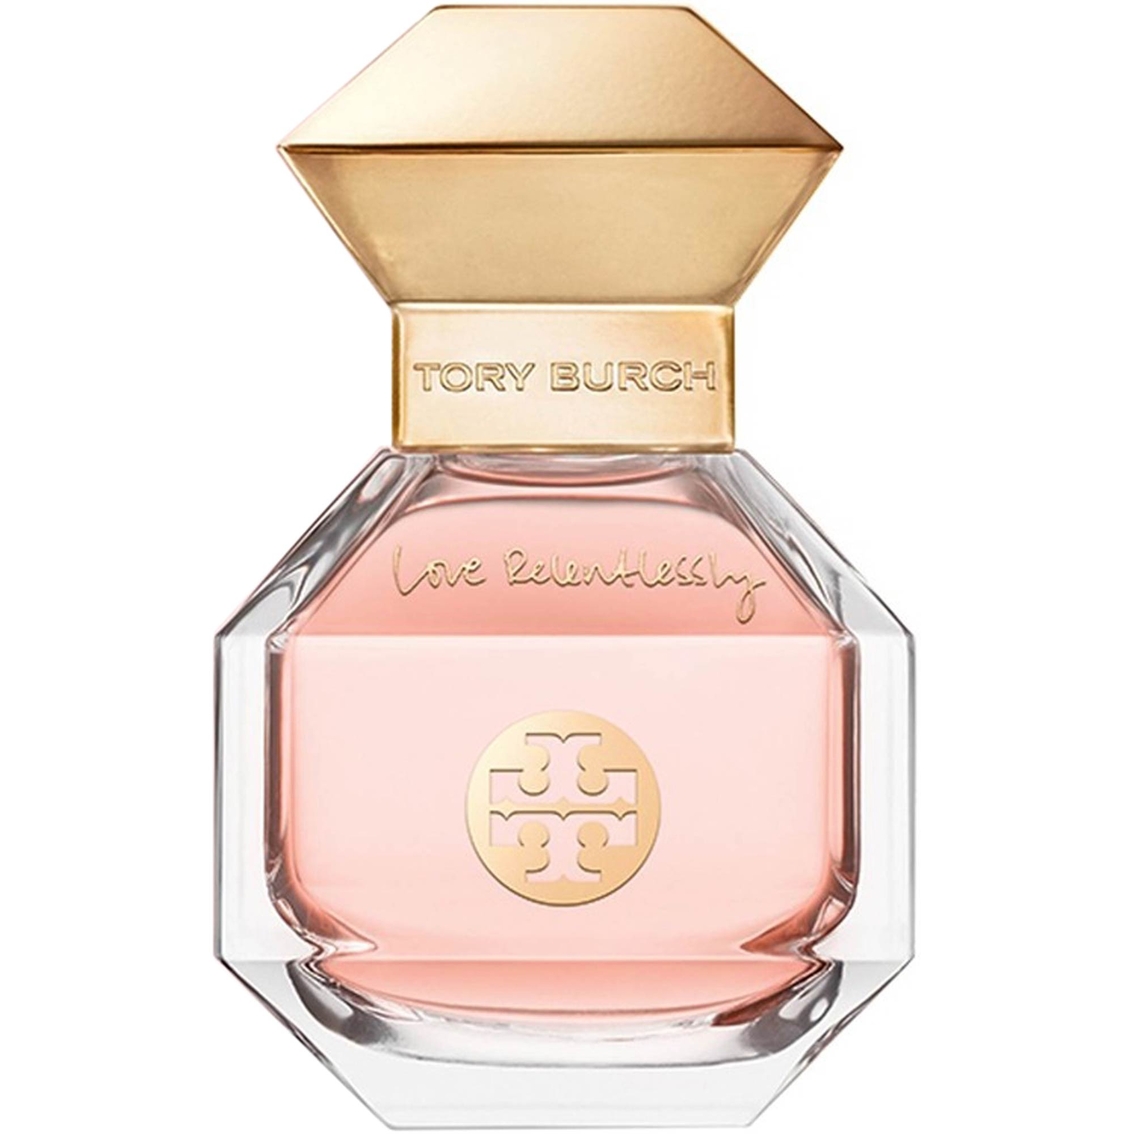 Tory Burch Love Relentlessly Eau De Parfum | Women's Fragrances ...